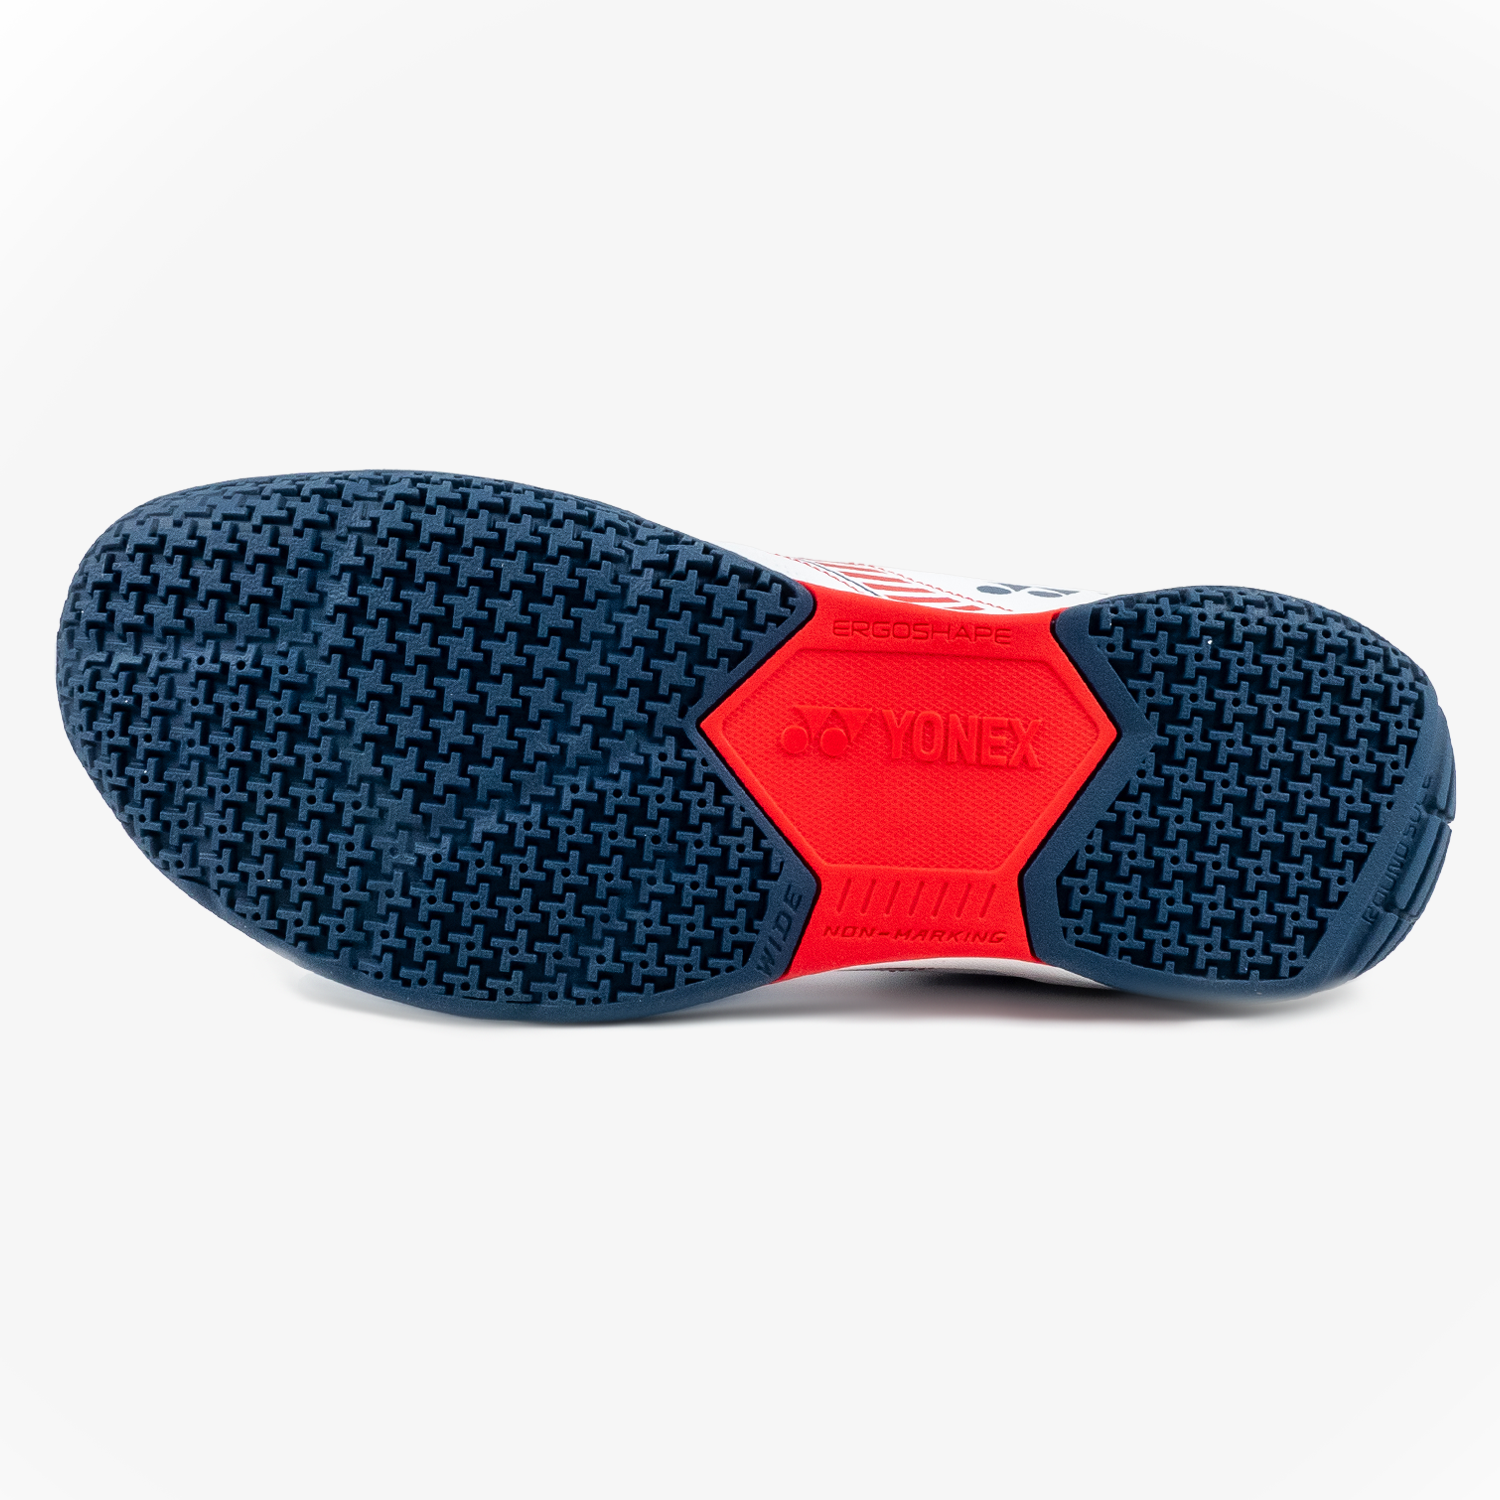 Yonex Strider Wide (White/Red) Court Shoe